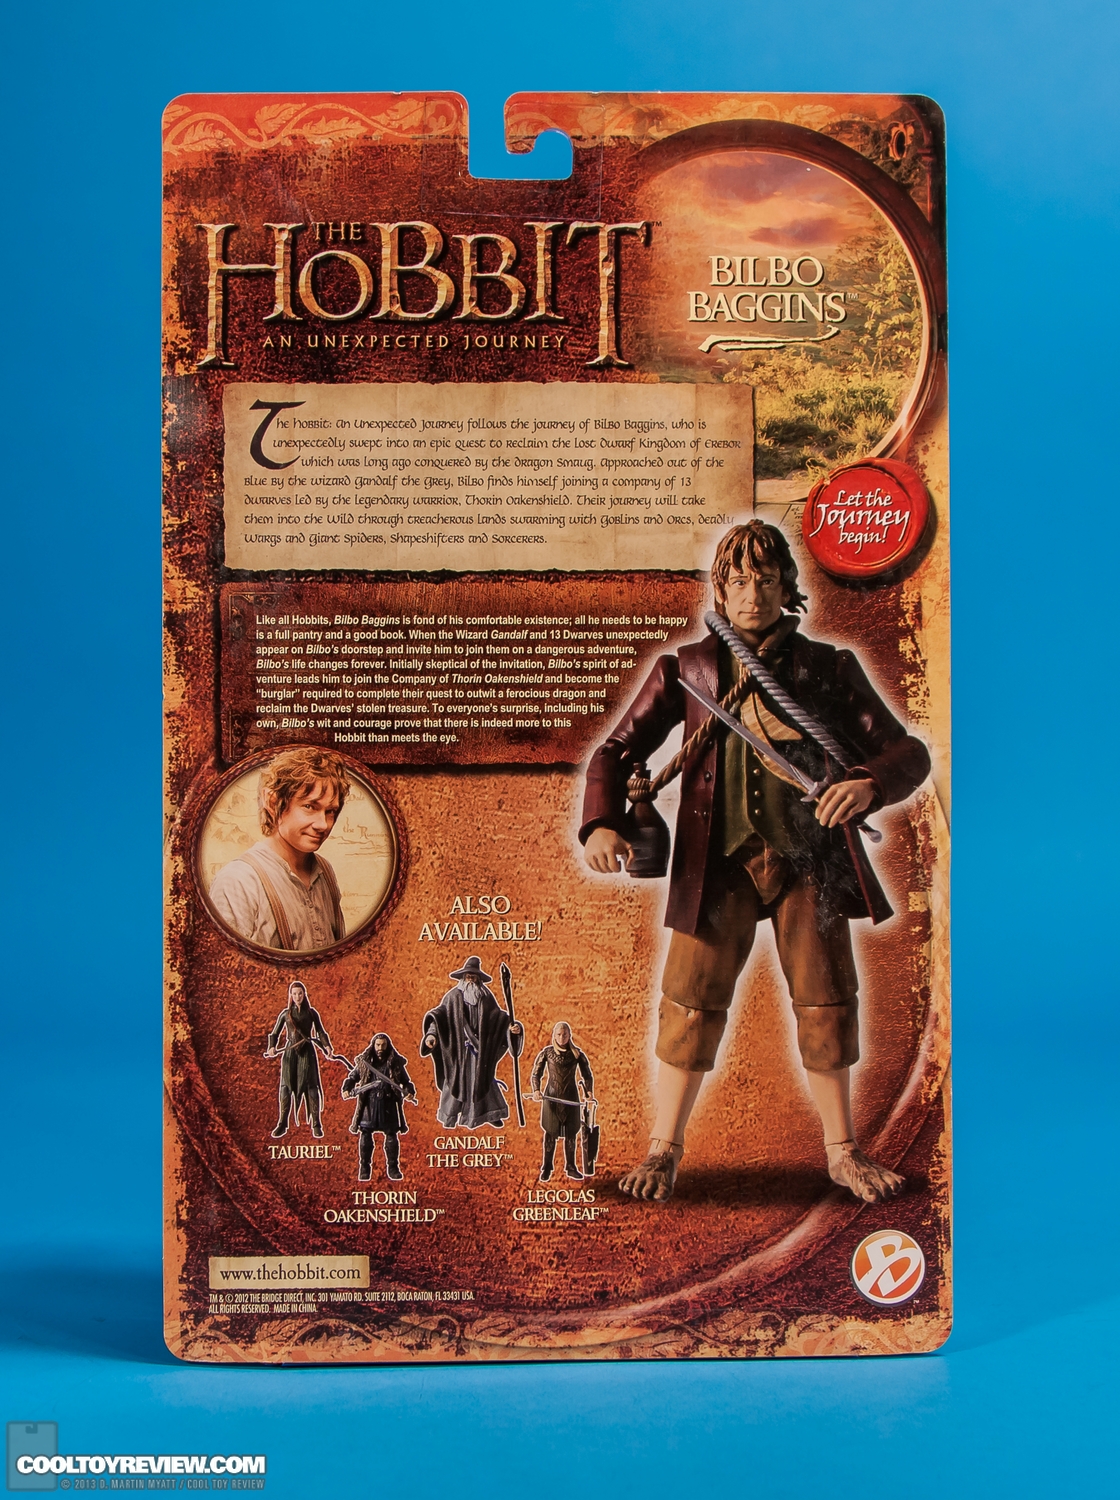 Bilbo-Baggins-6-Inch-Hobbit-Unexpected-Journey-The-Bridge-018.jpg